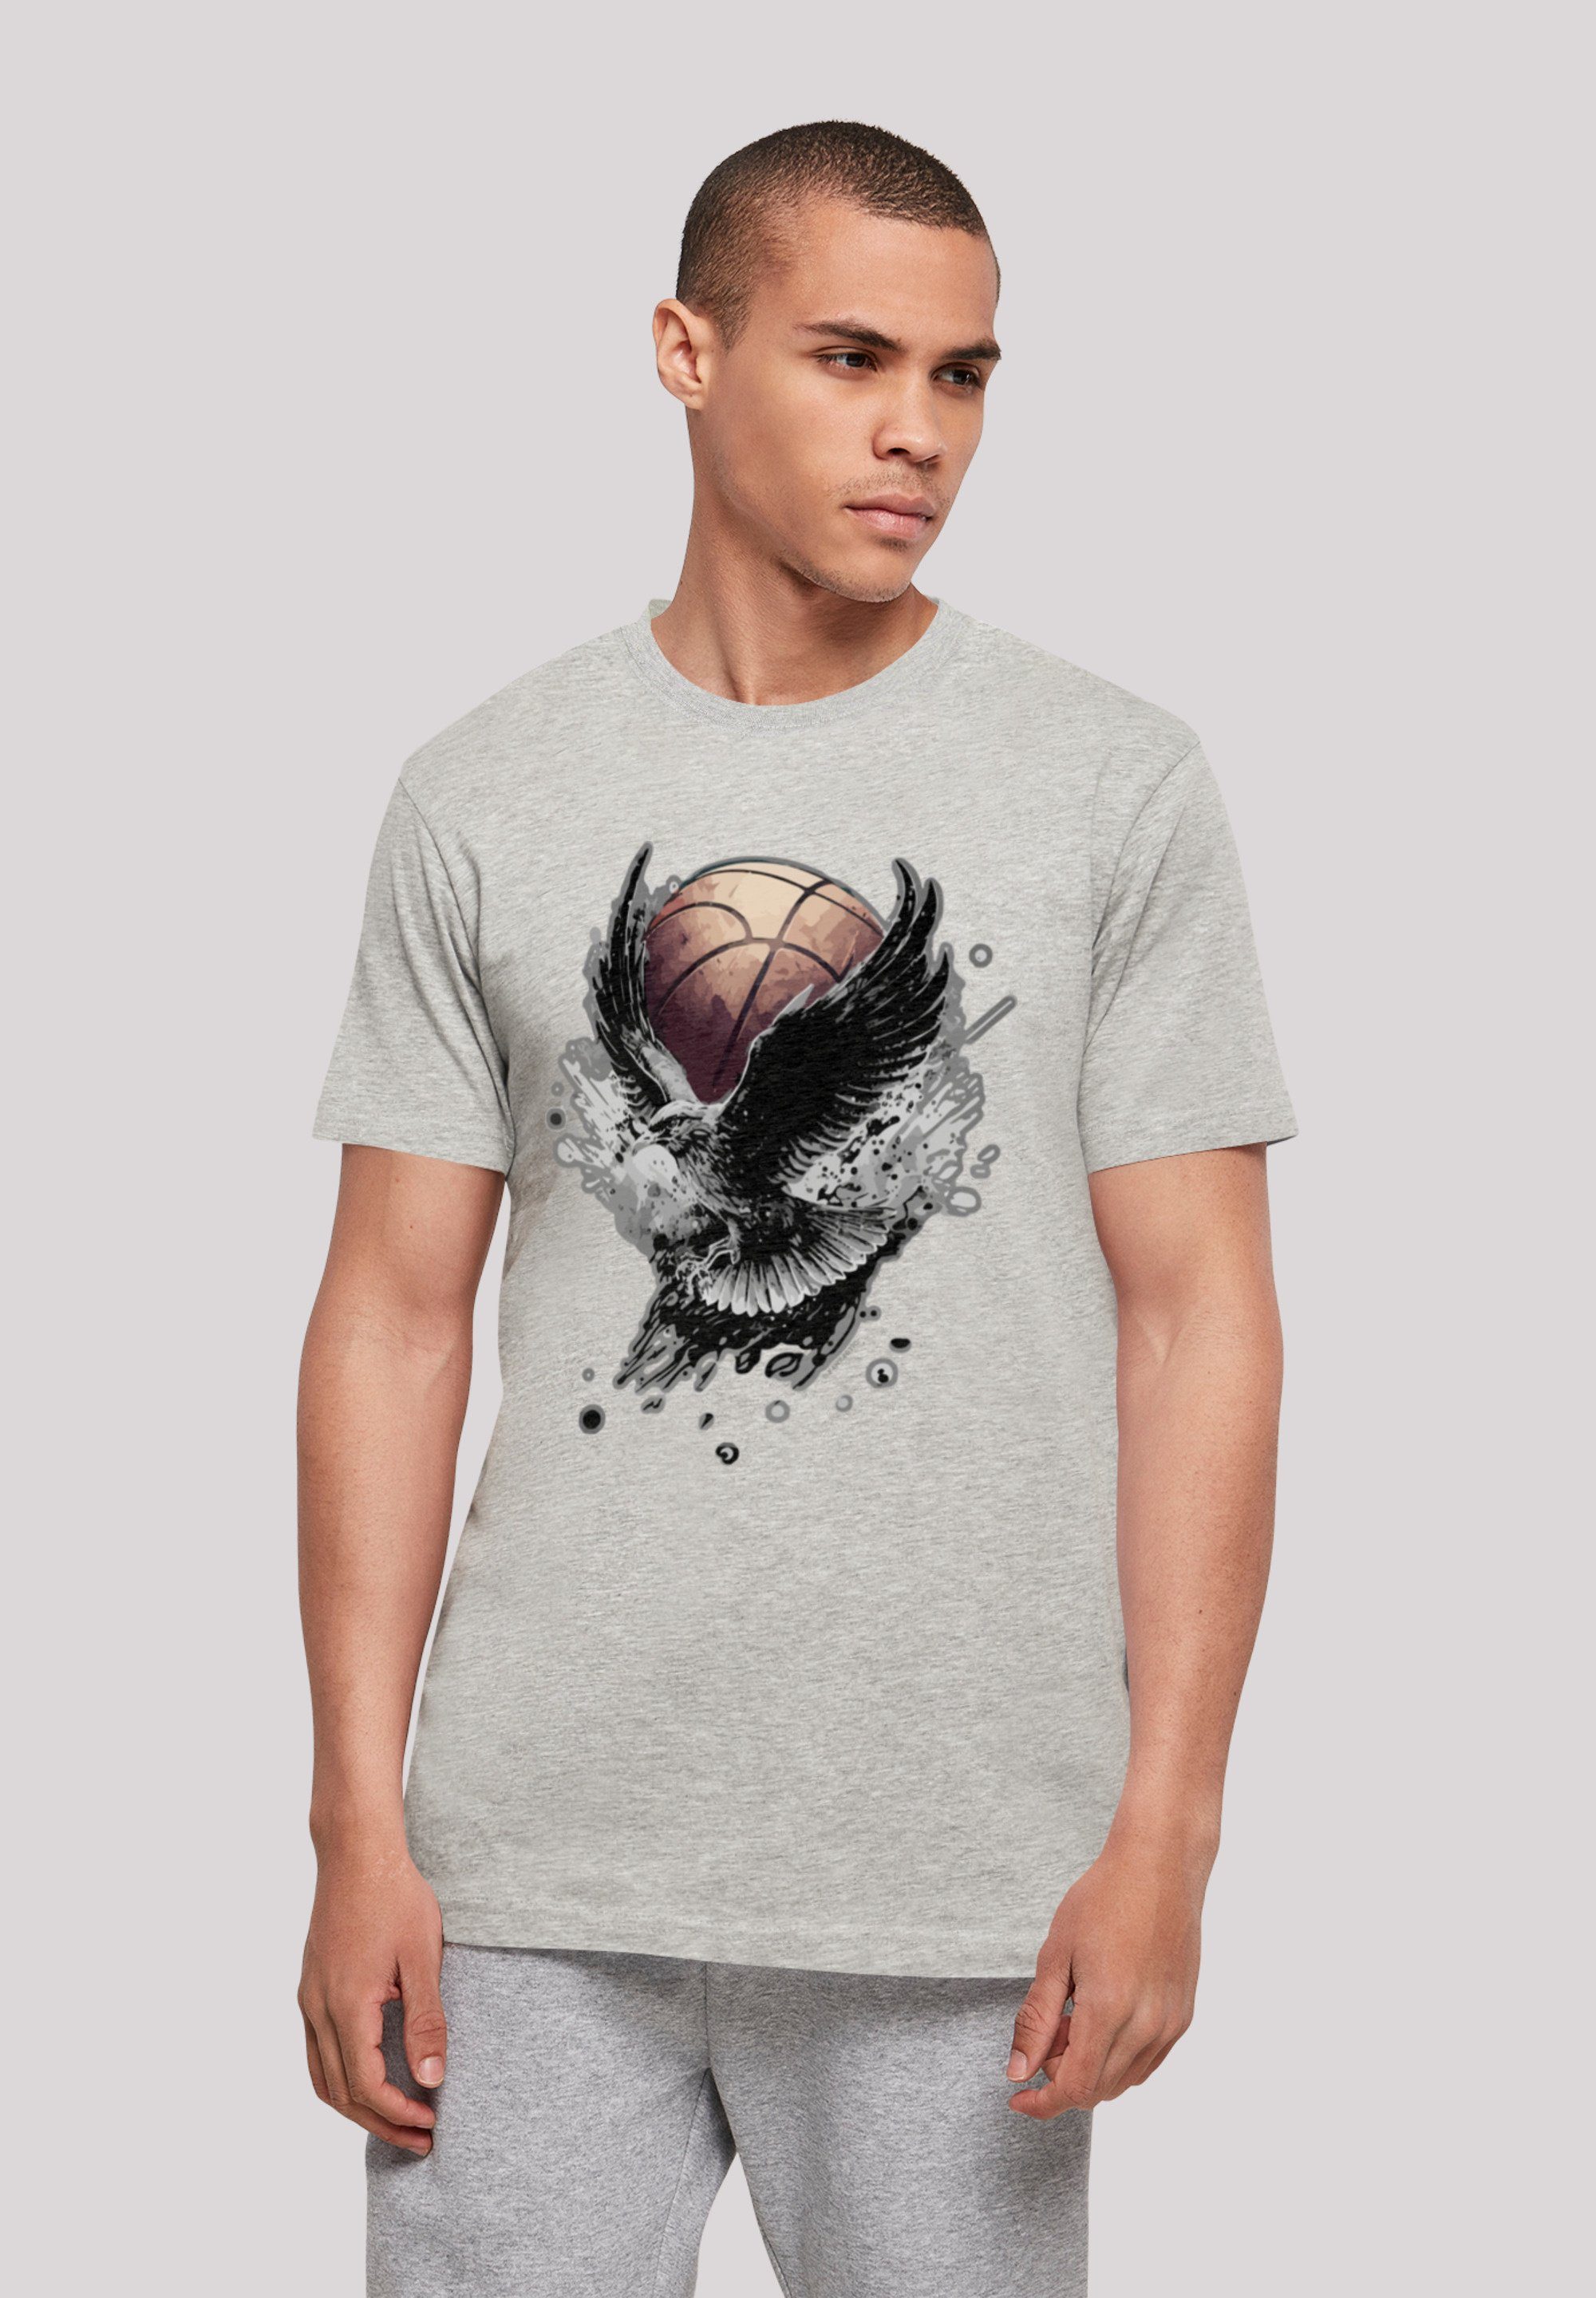 Basketball hohem T-Shirt Print, weicher Adler mit F4NT4STIC Baumwollstoff Sehr Tragekomfort